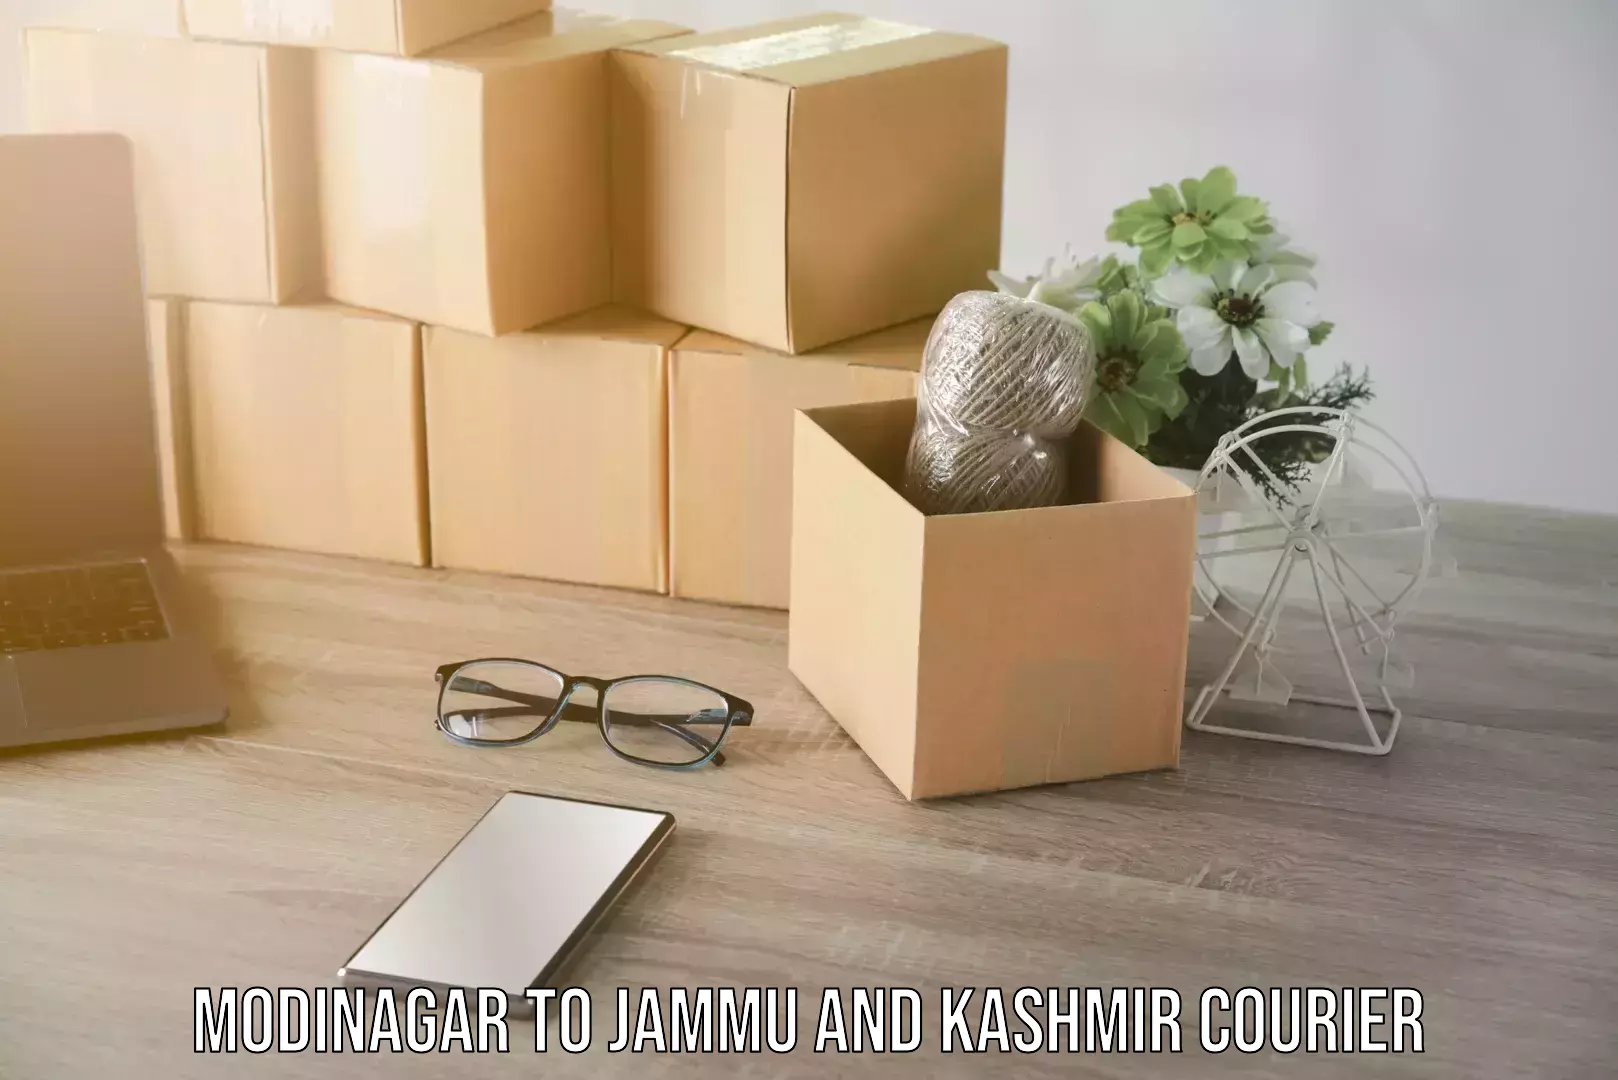 Furniture moving experts Modinagar to Jammu and Kashmir